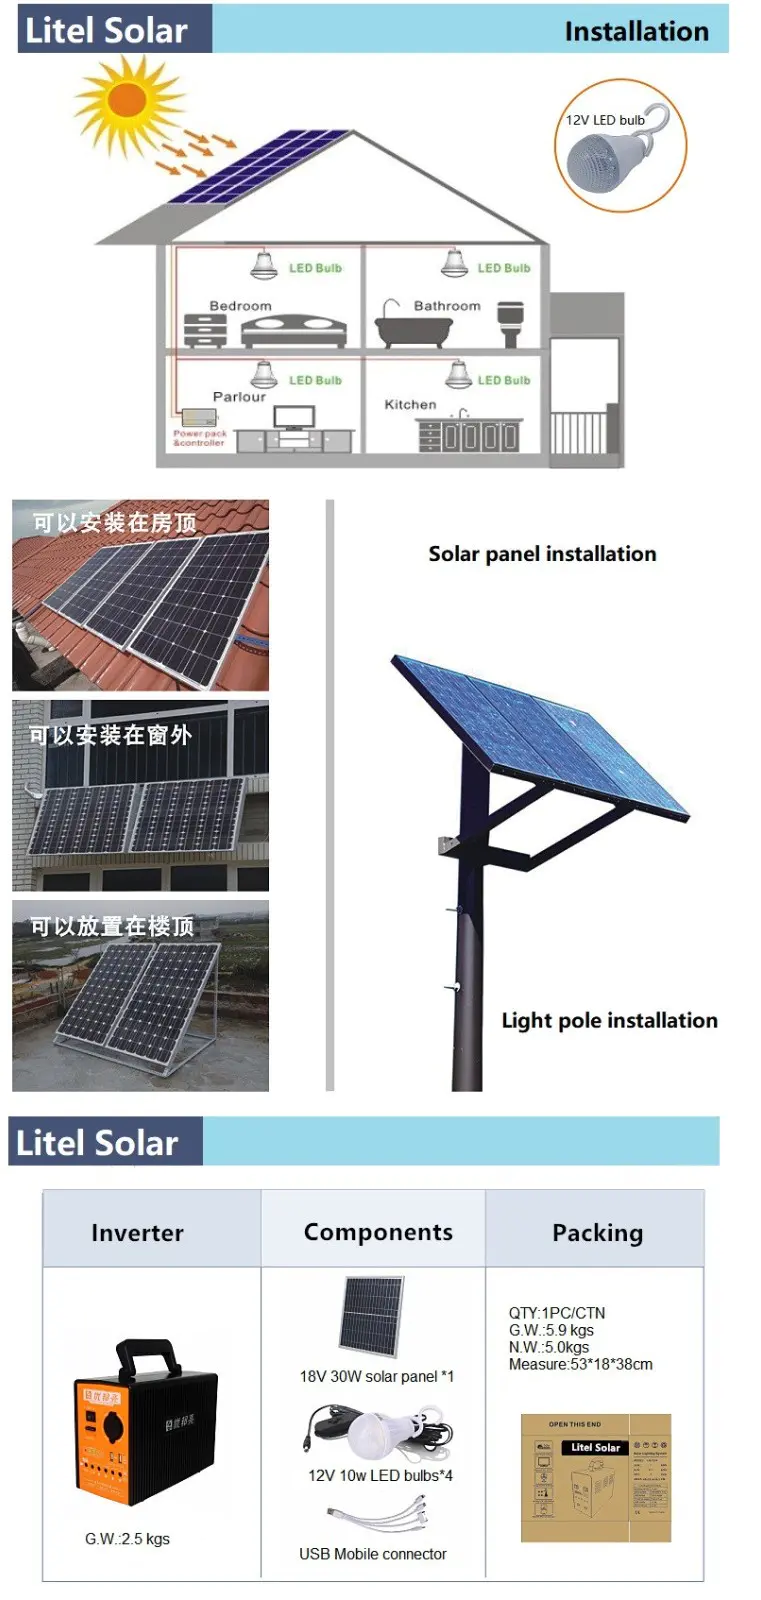 Litel เทคโนโลยีความสว่างระบบแสงสว่างพลังงานแสงอาทิตย์ราคาโรงงานสำหรับการประชุมเชิงปฏิบัติการ